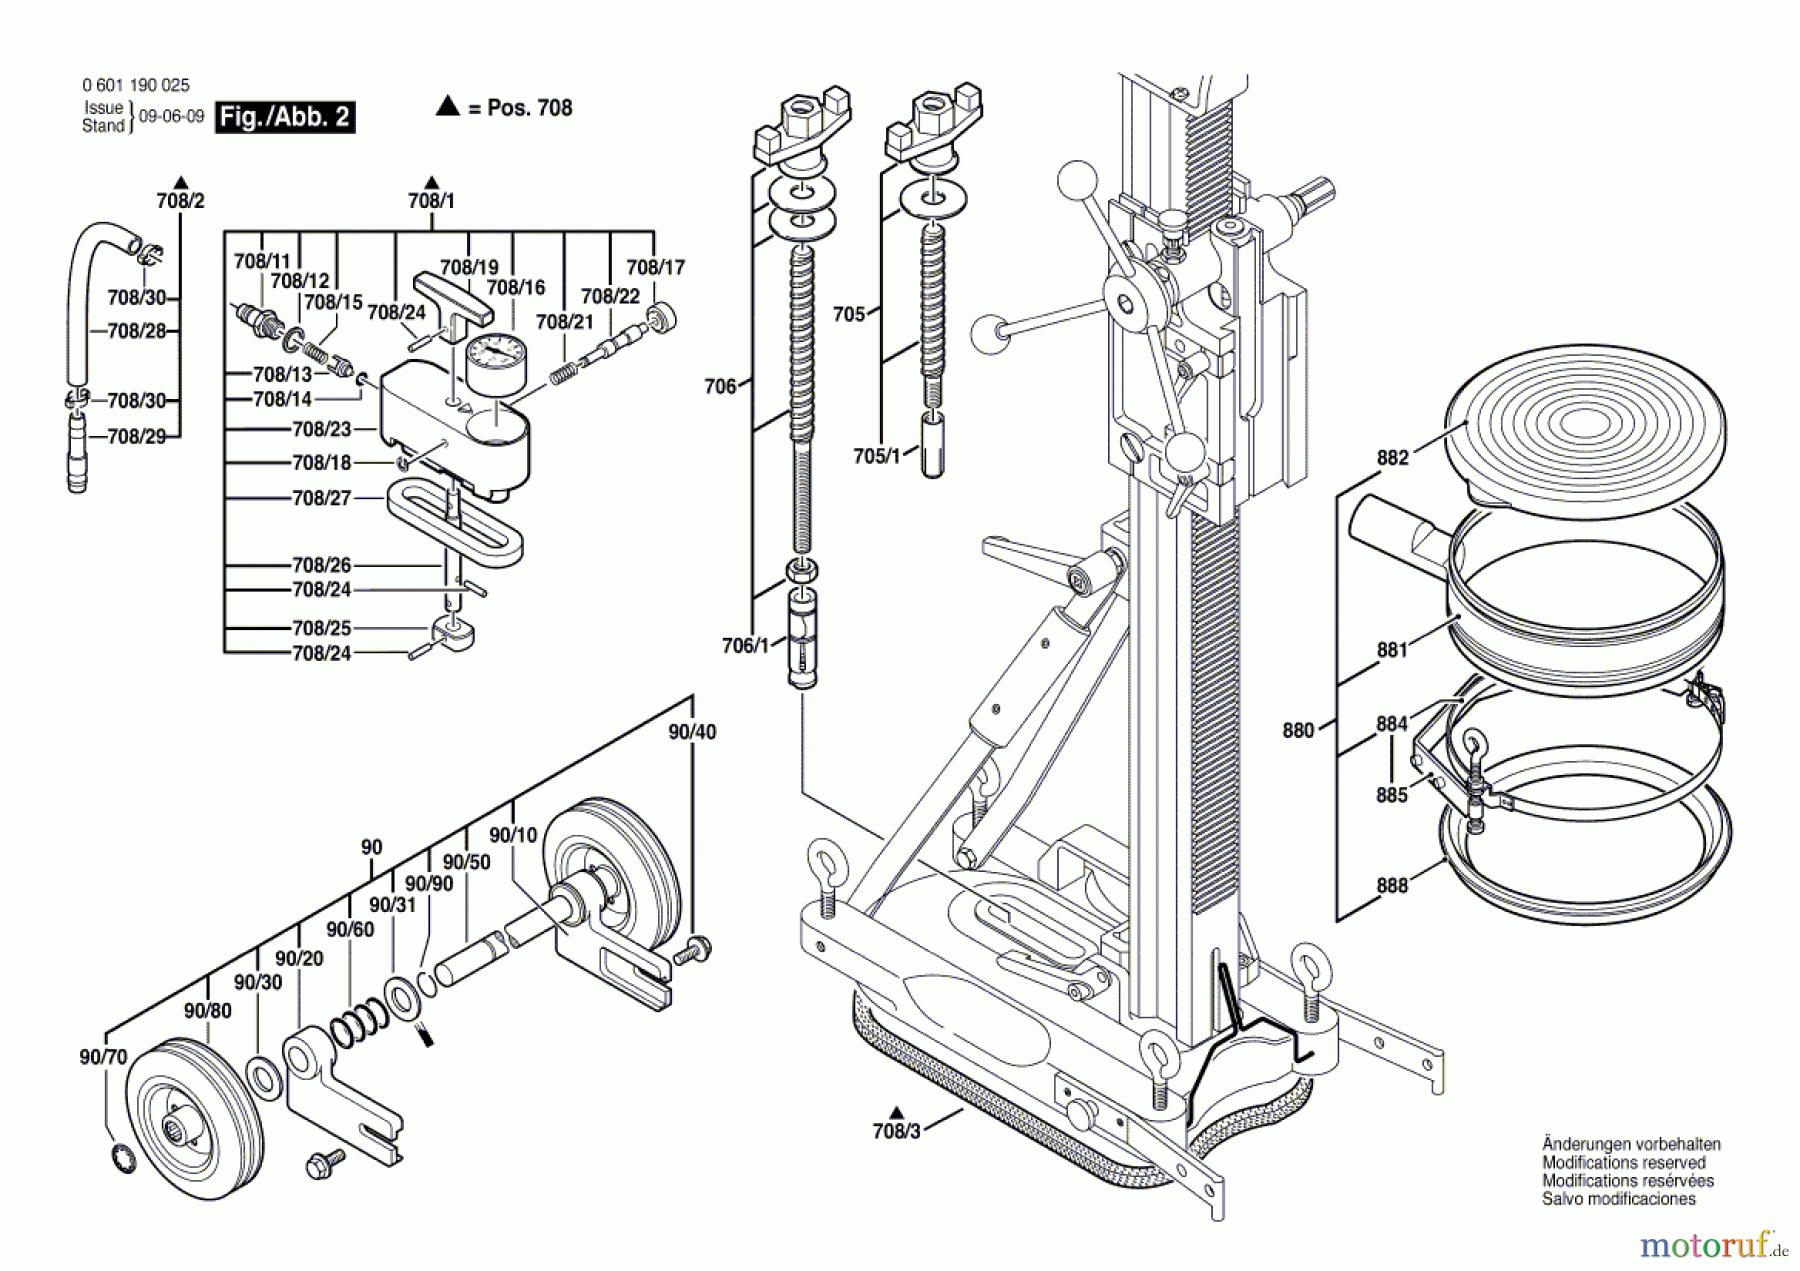  Bosch Werkzeug Bohrständer S 500 A Seite 2